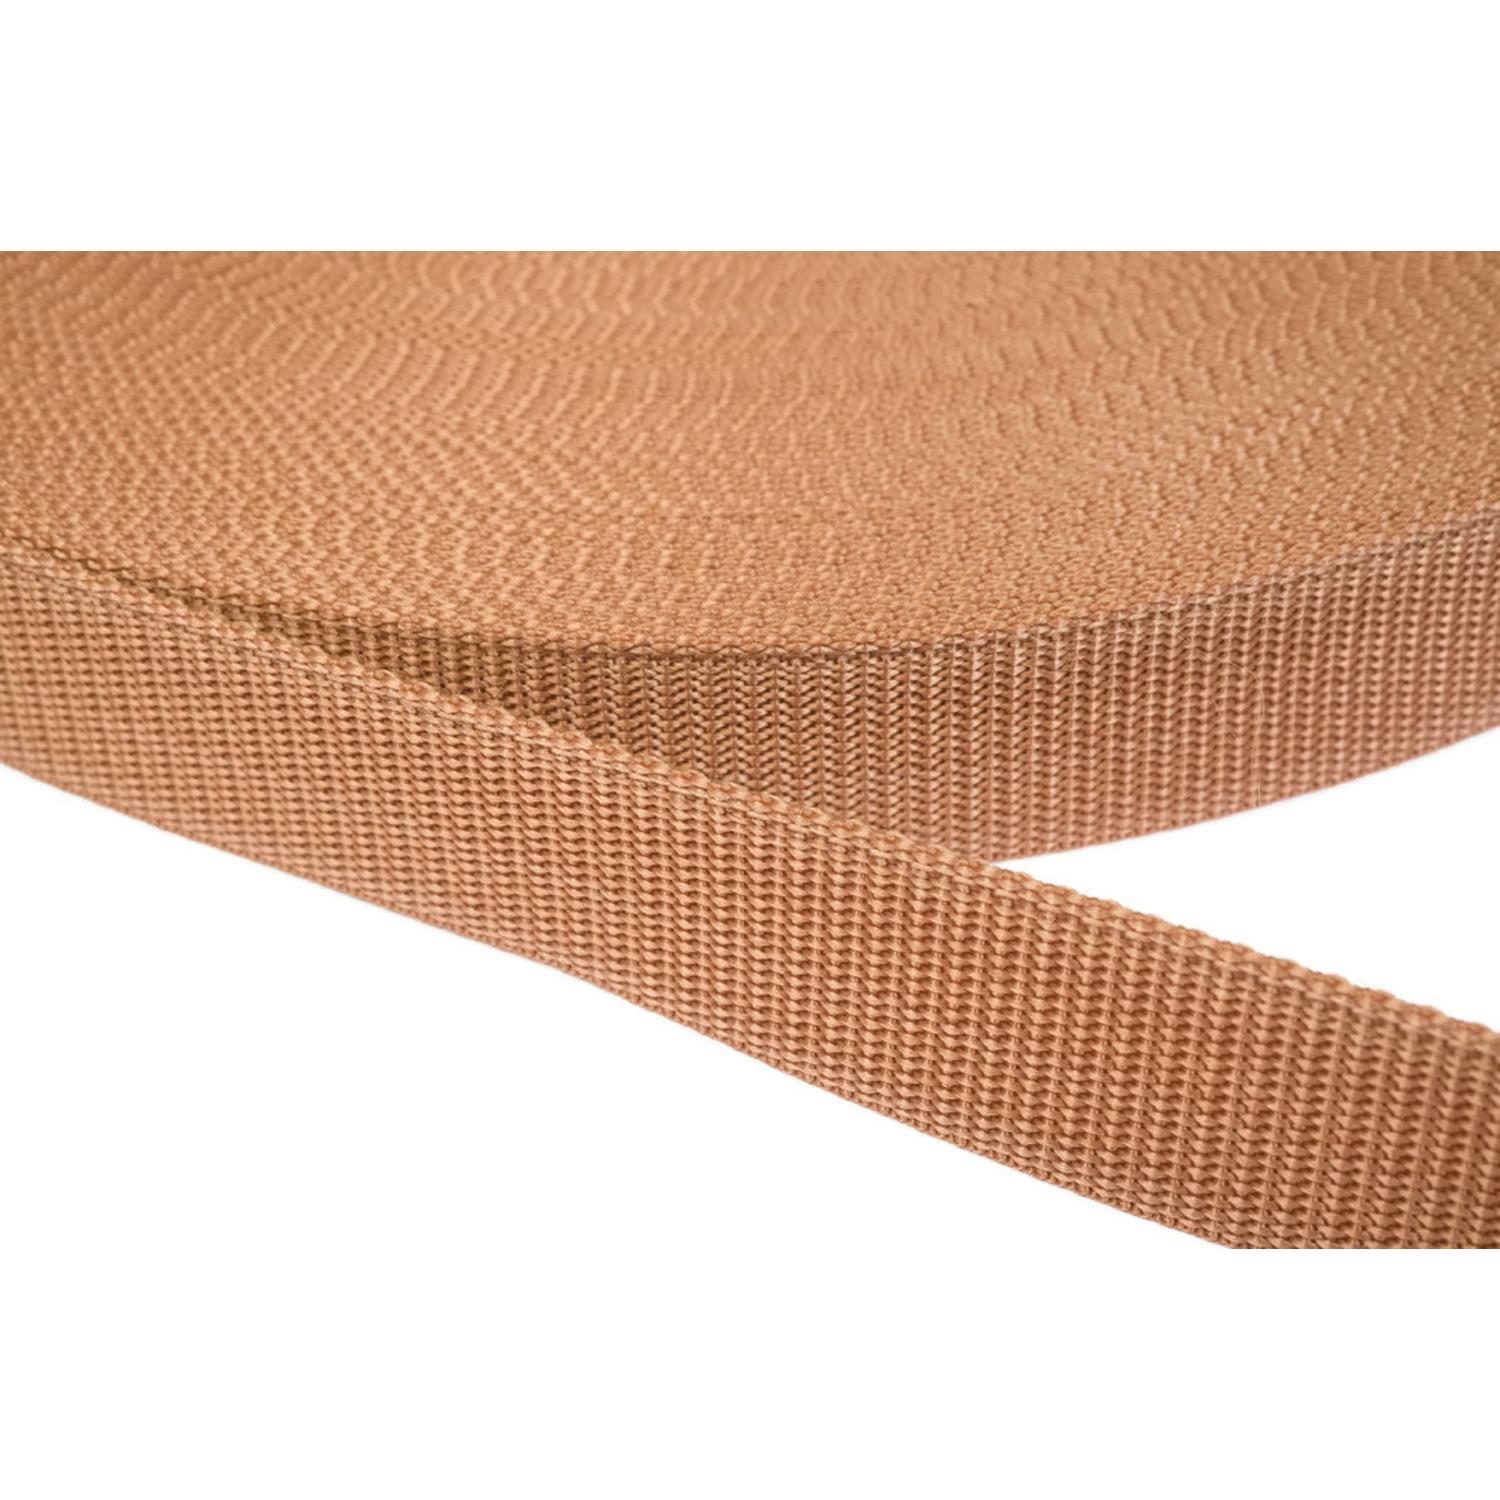 Gurtband 30mm breit aus Polypropylen in 41 Farben 06 - hellbraun 50 Meter